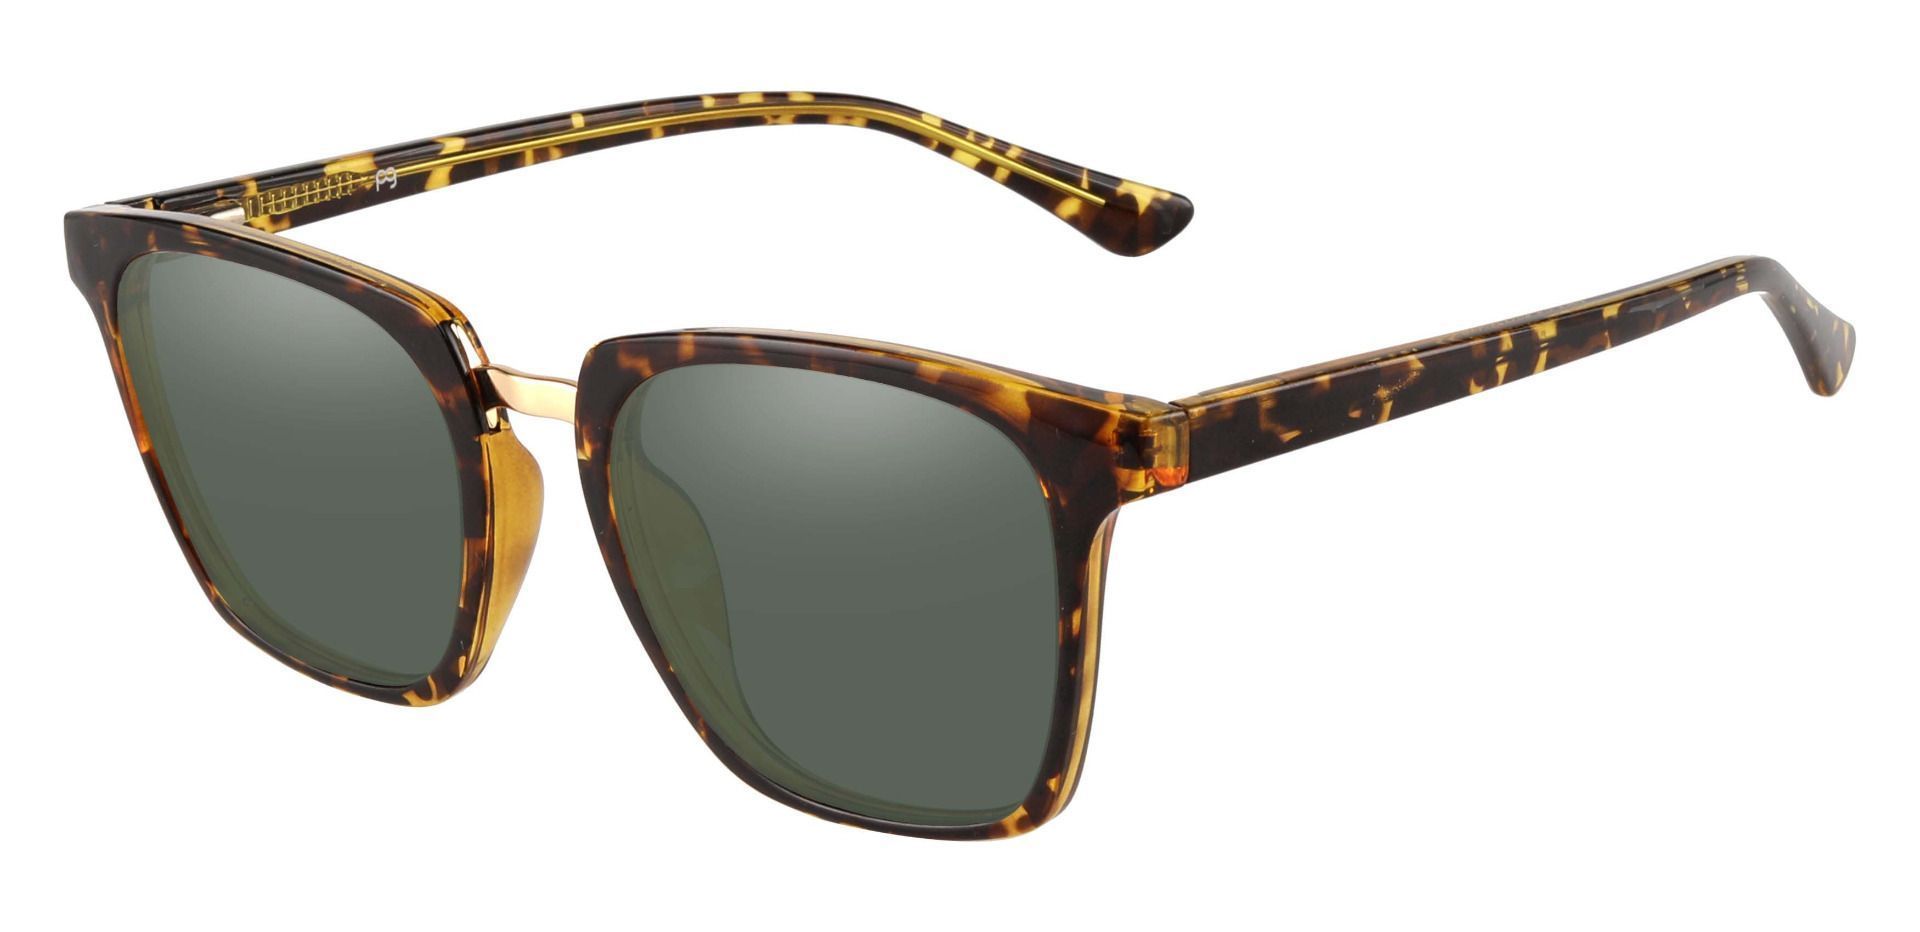 Delta Square Reading Sunglasses - Tortoise Frame With Green Lenses